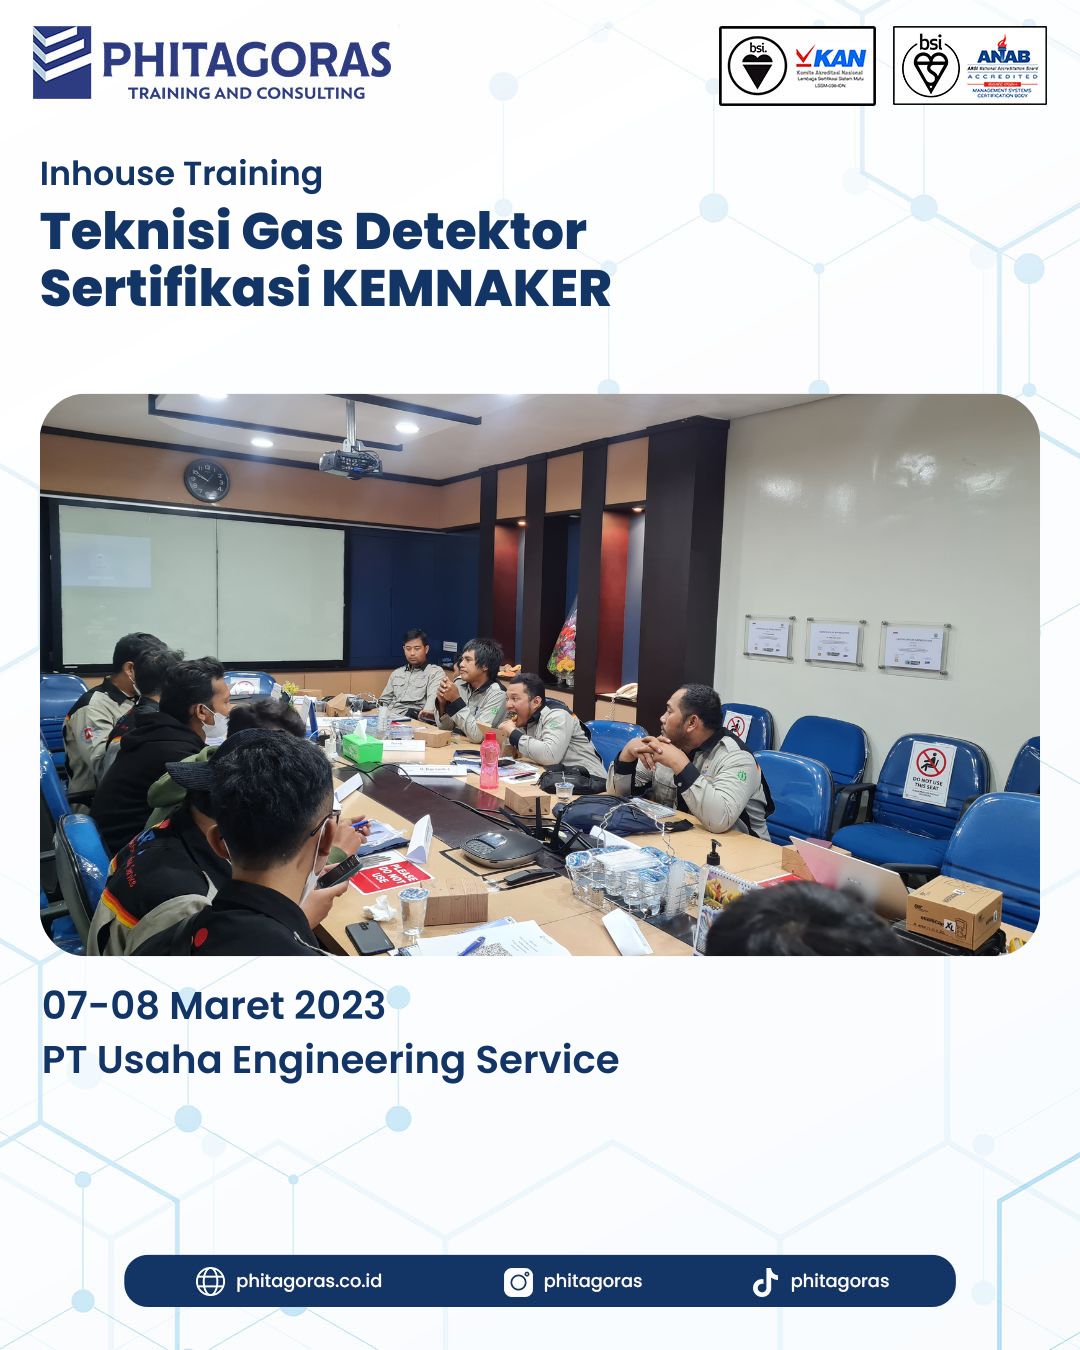 Inhouse Training Teknisi Gas Detektor Sertifikasi KEMNAKER - PT Usaha Engineering Service